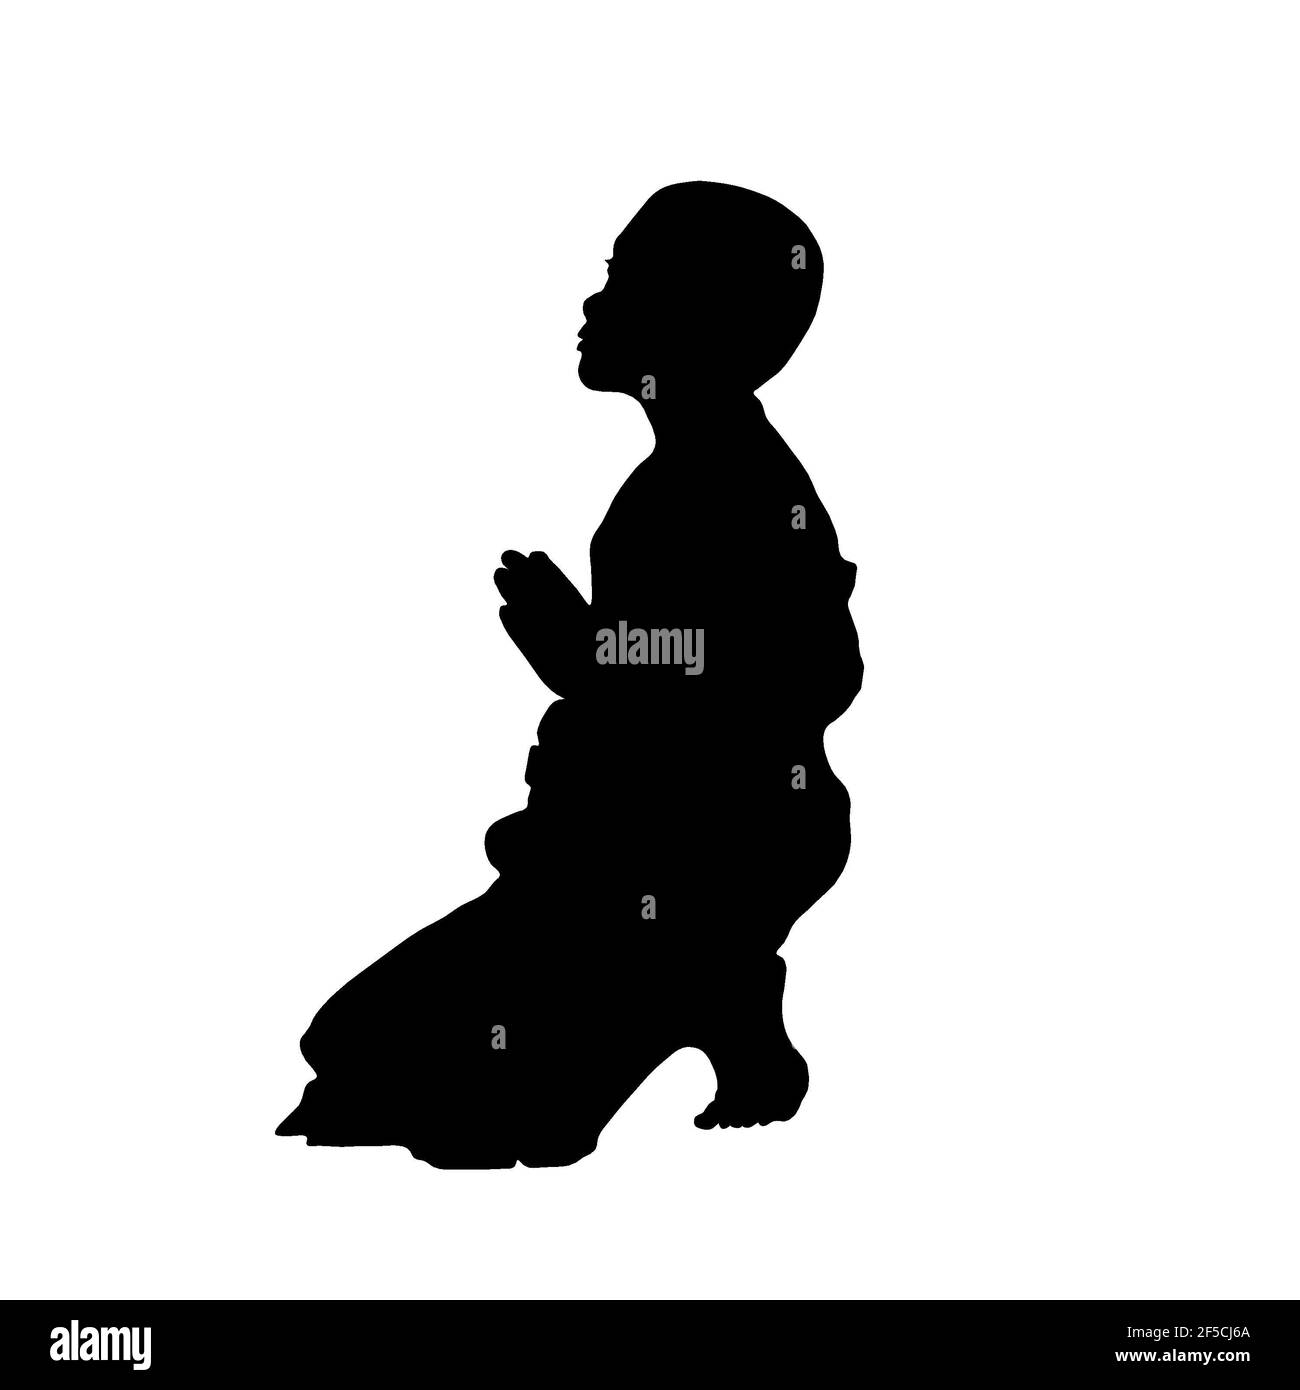 Silhouette jeune moine bouddhiste noir et blanc priant novice accroupi pieds nus agenouillement religion religieuse dieu tradition méditation dévotion Banque D'Images